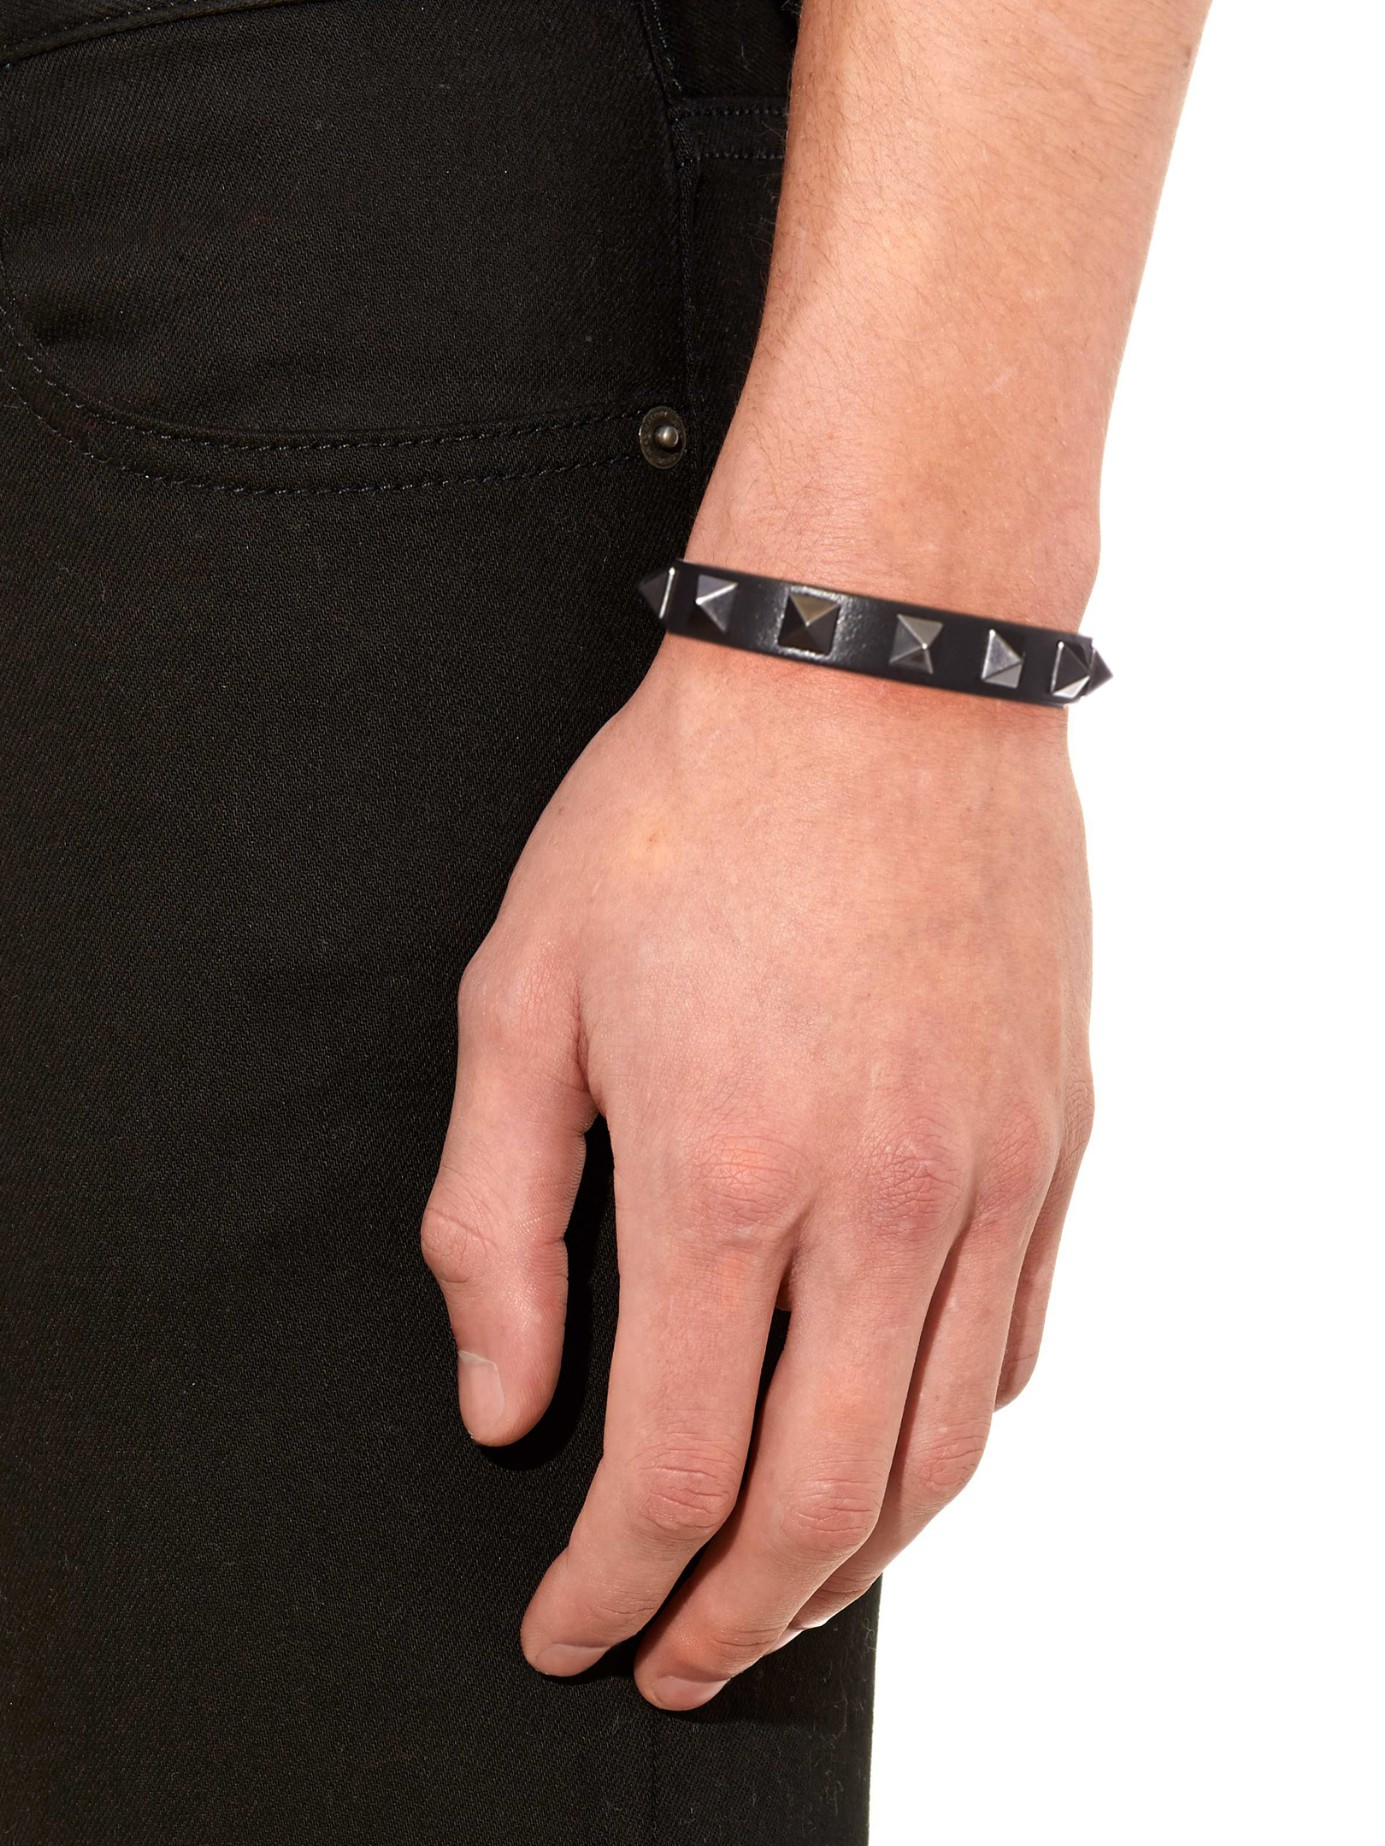 Valentino Rockstud Leather Bracelet in Black for Men - Lyst